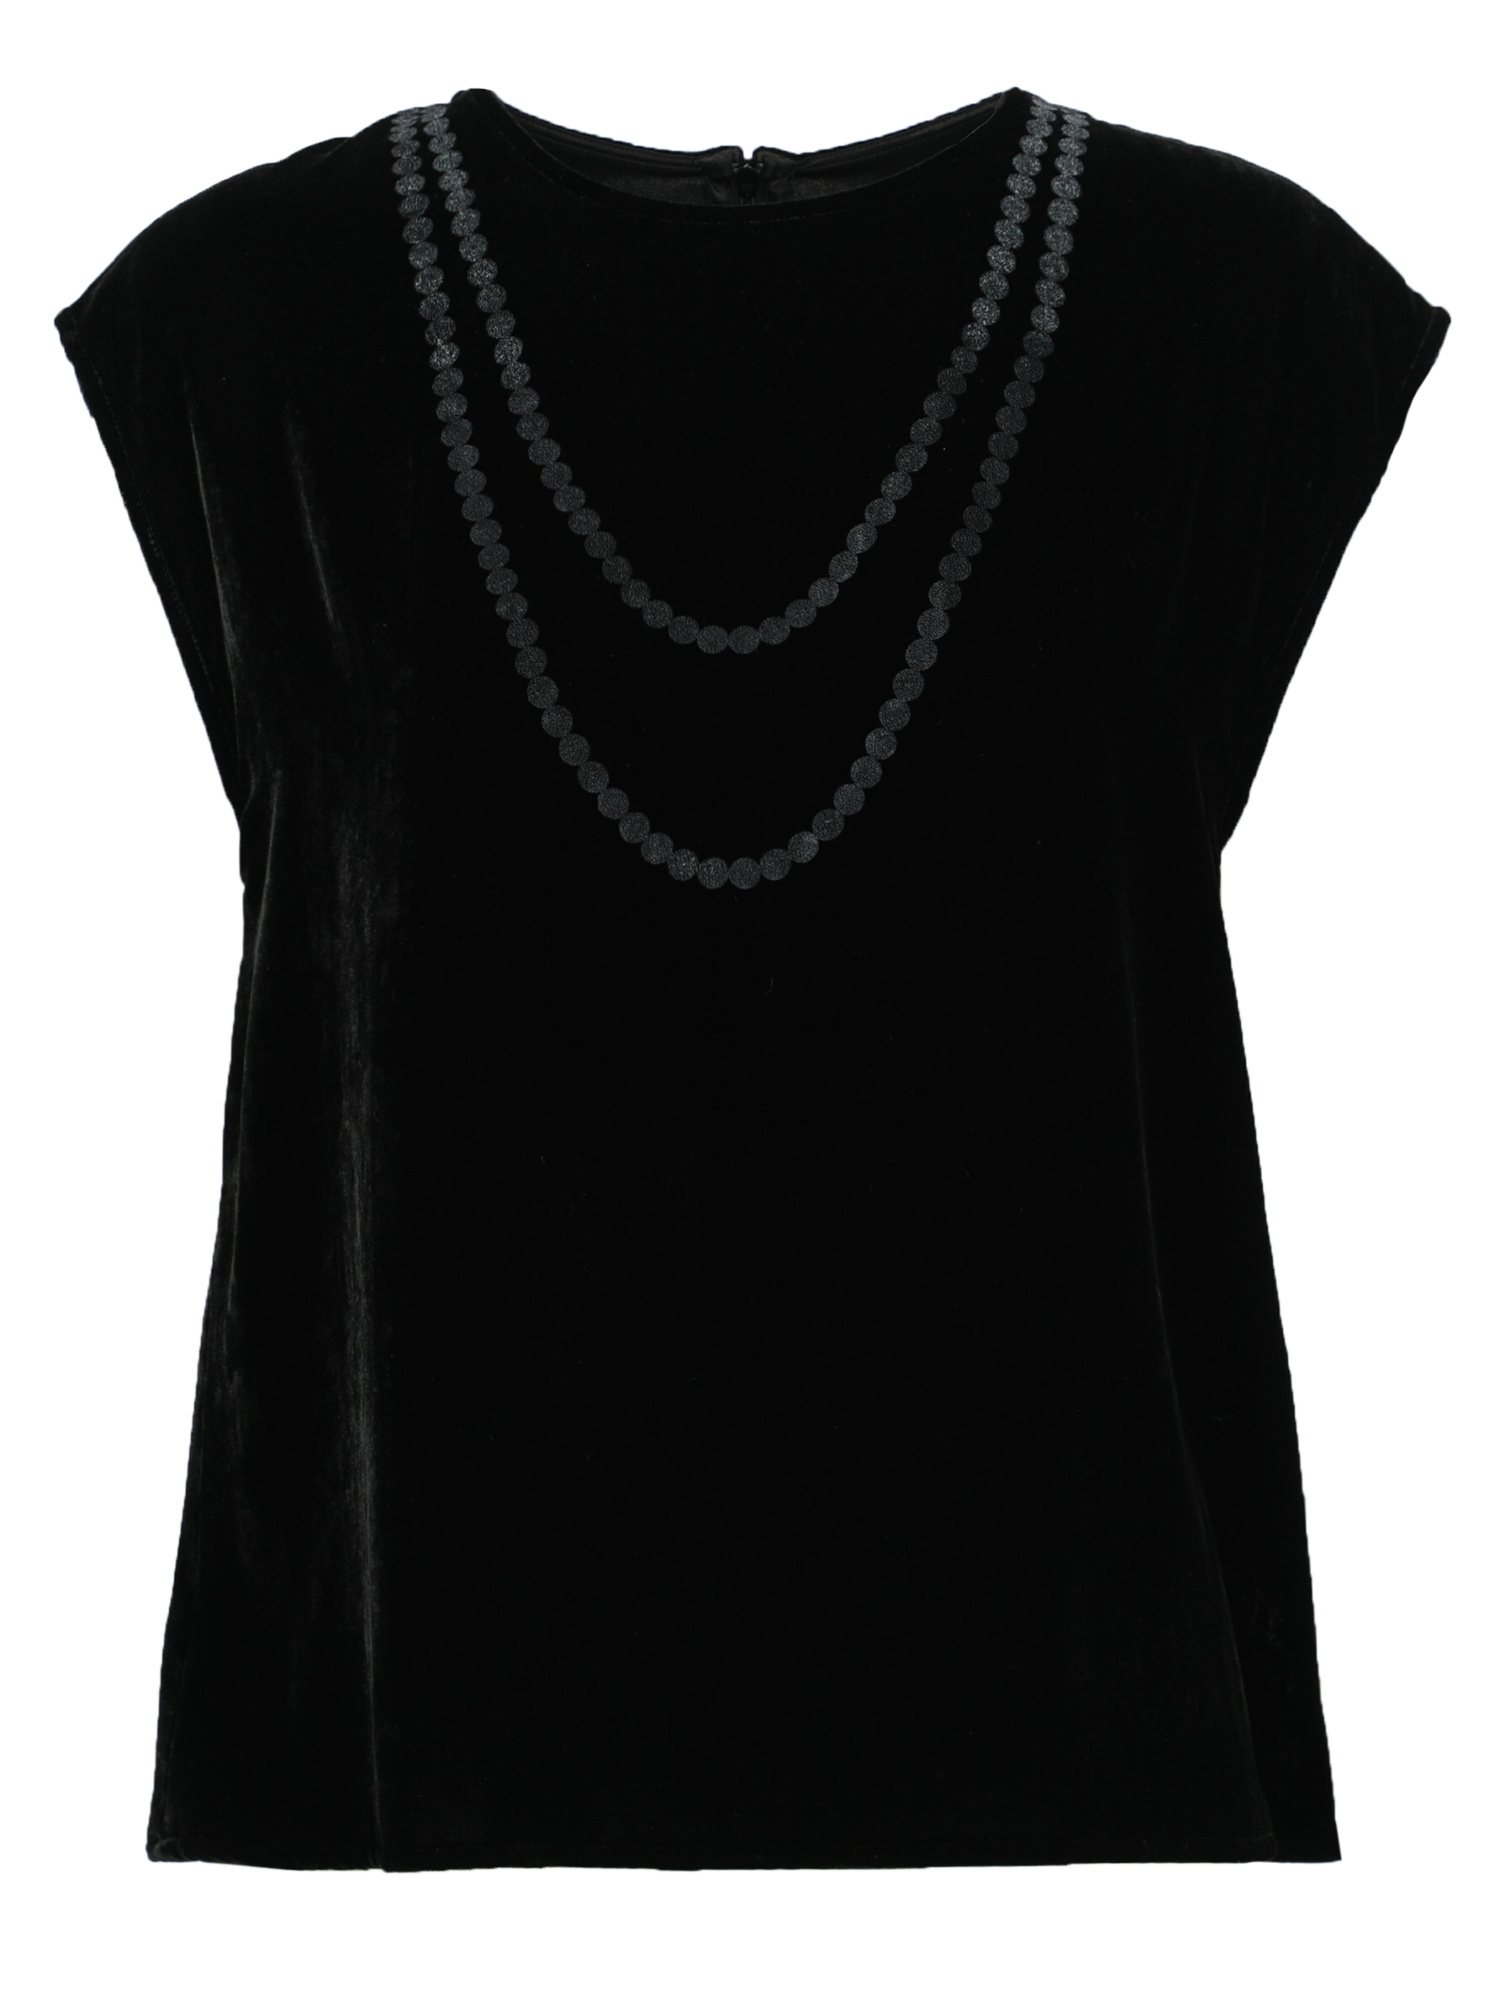 Mm6 Maison Margiela Femme T-shirts et tops Black Synthetic Fibers